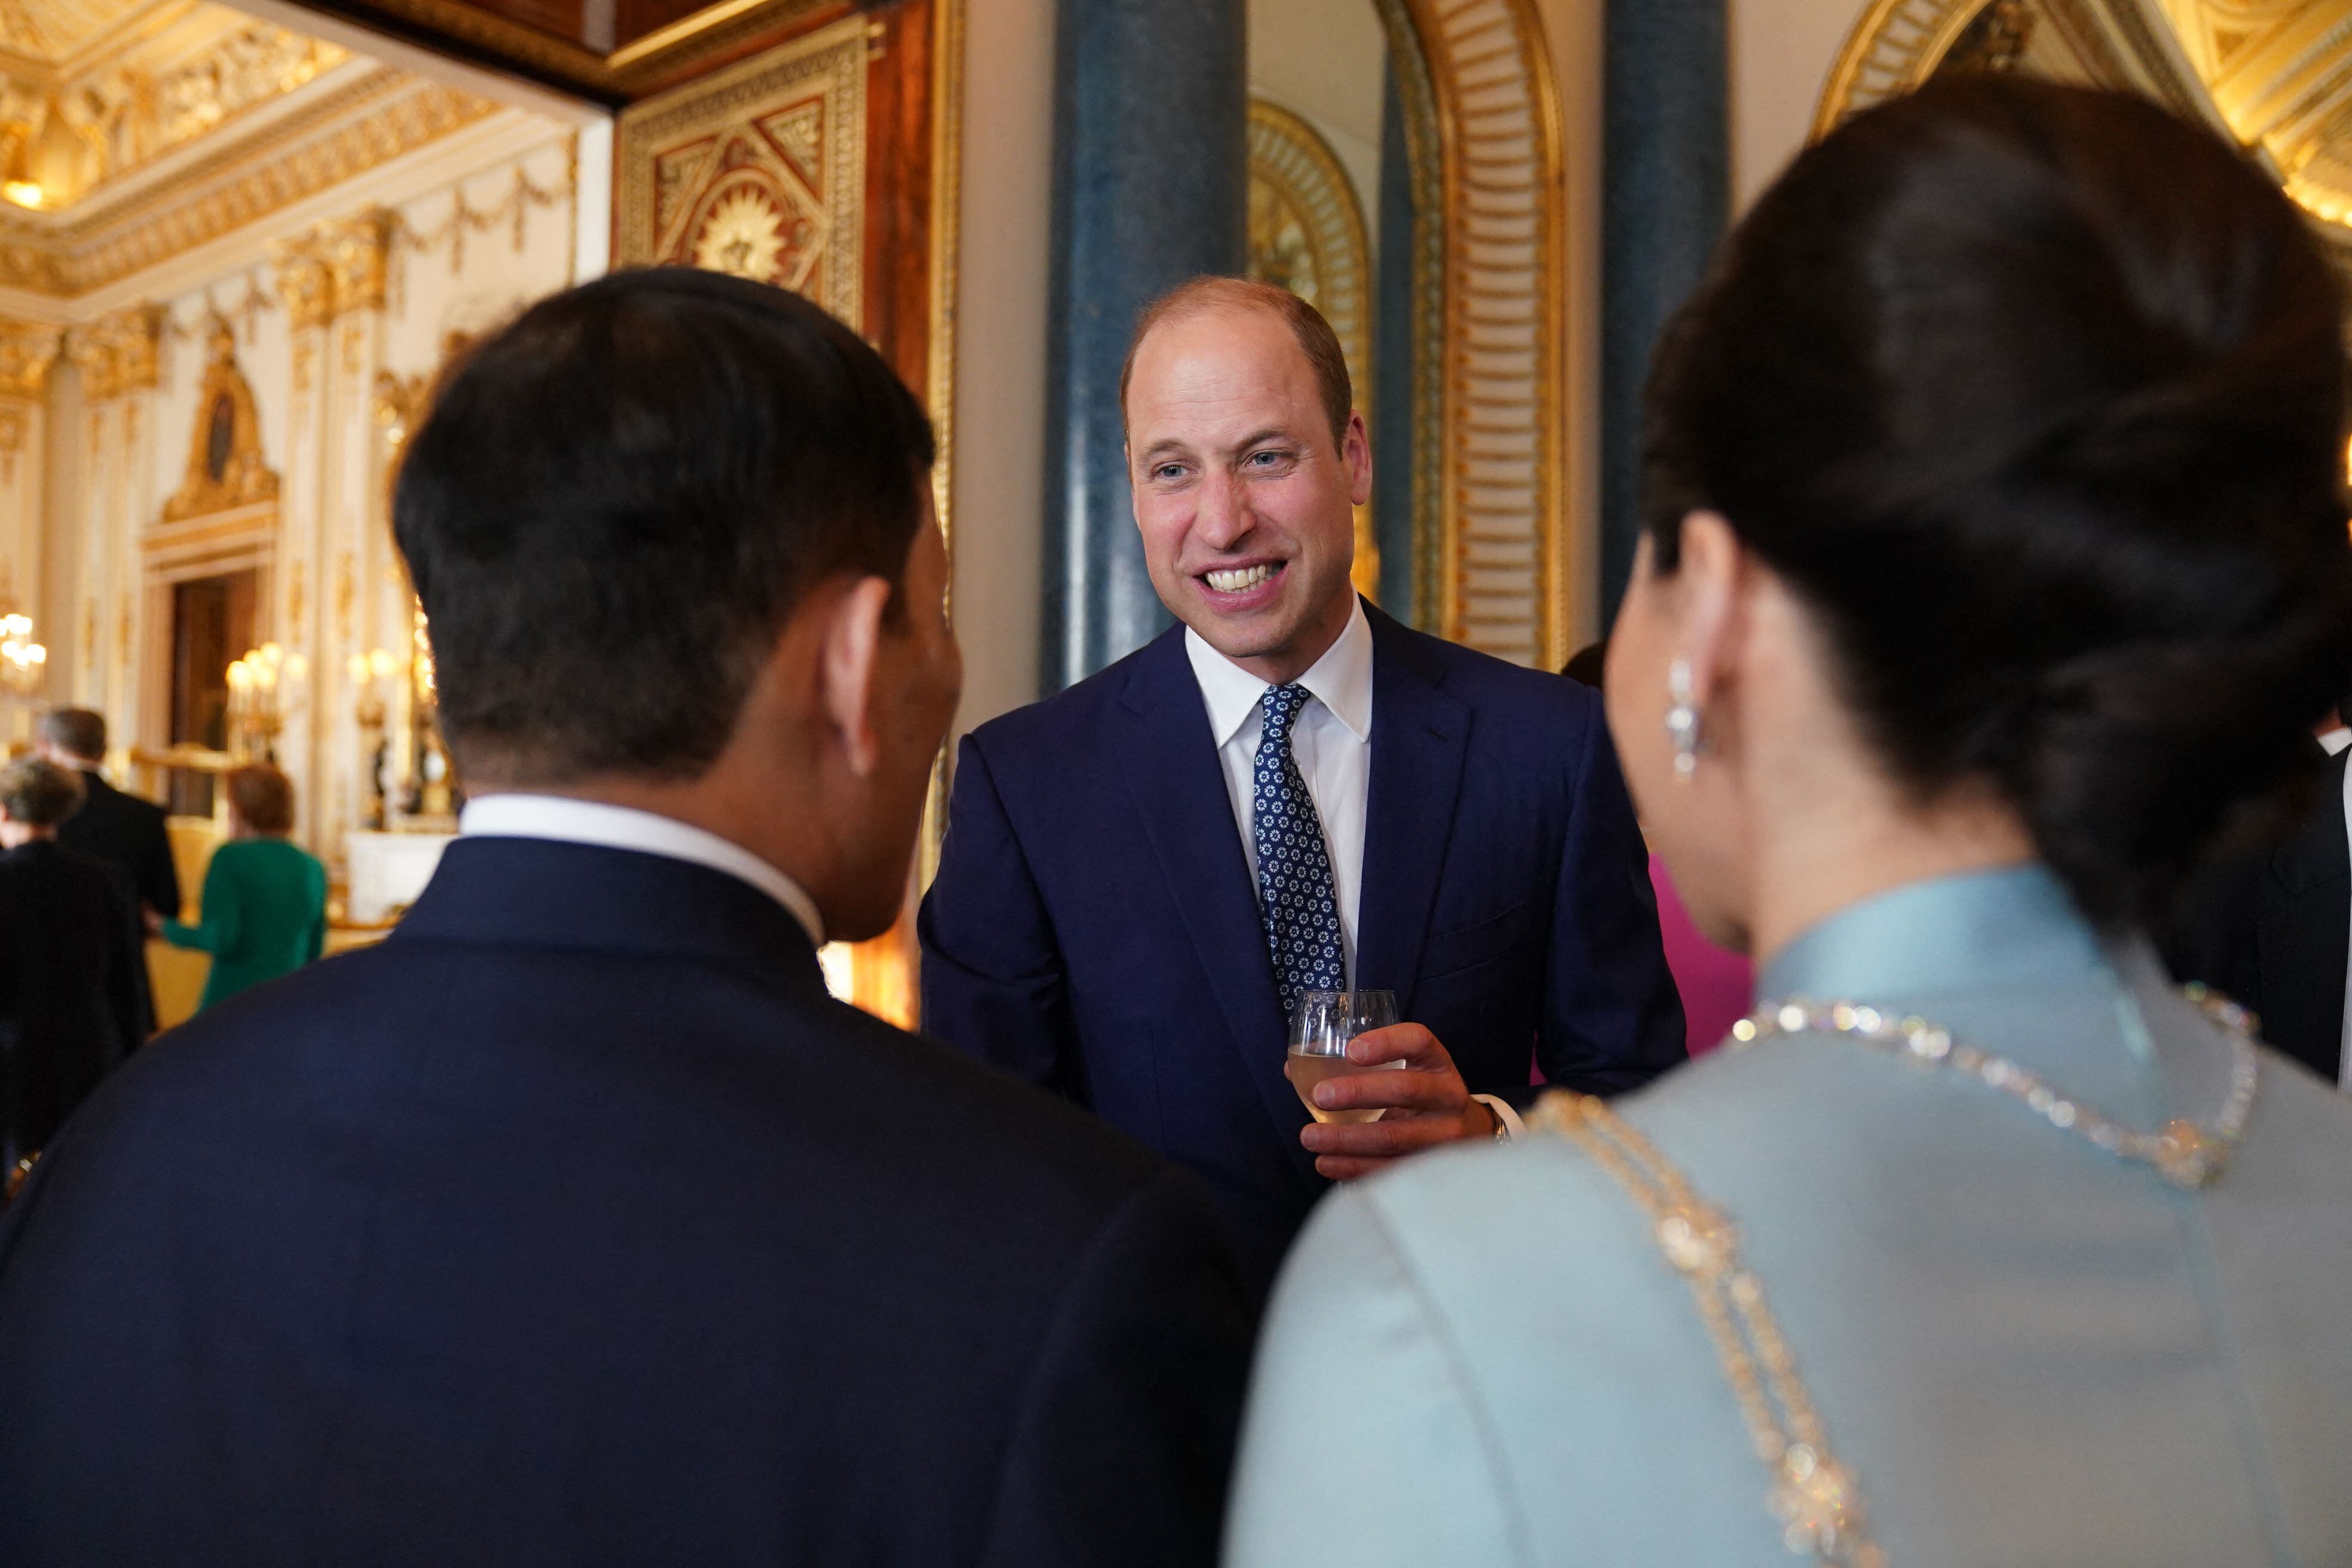 El príncipe Guillermo, primogénito de Carlos III y heredero al trono británico, charla con la reina Suthida y el rey Vajiralongkorn de Tailandia durante la recepción.